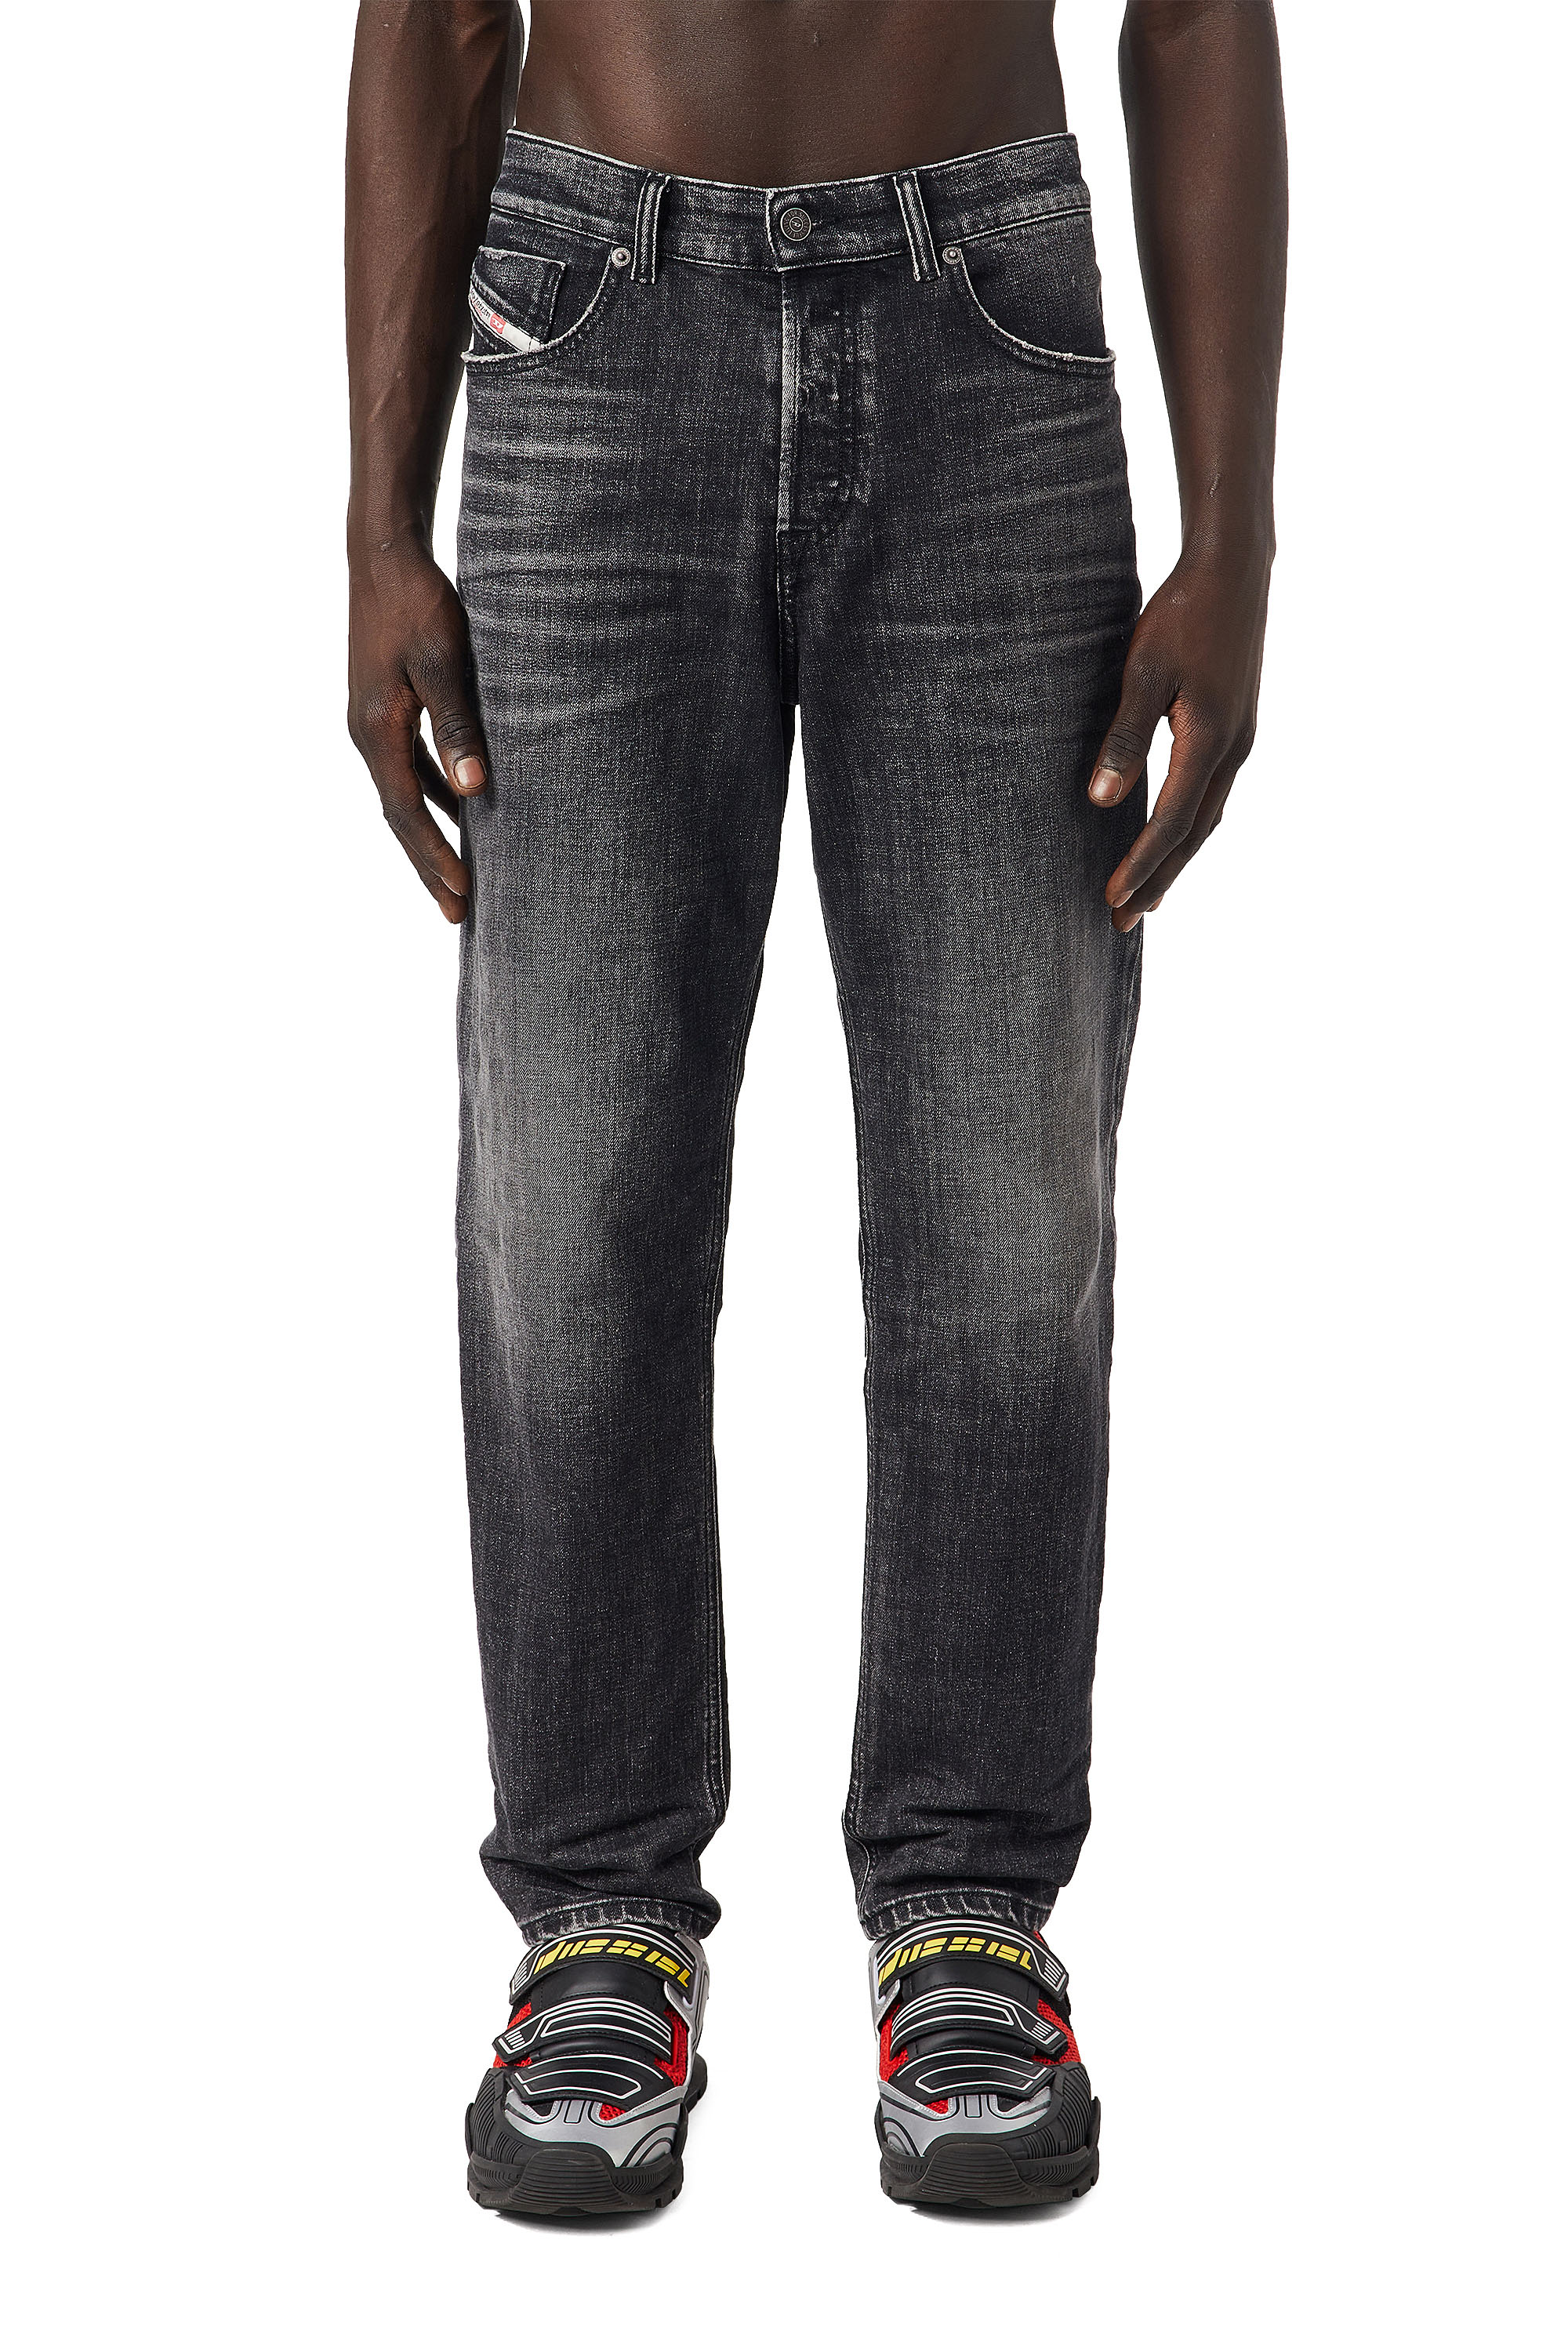 Super skinny fit jeans herren - Die hochwertigsten Super skinny fit jeans herren ausführlich analysiert!